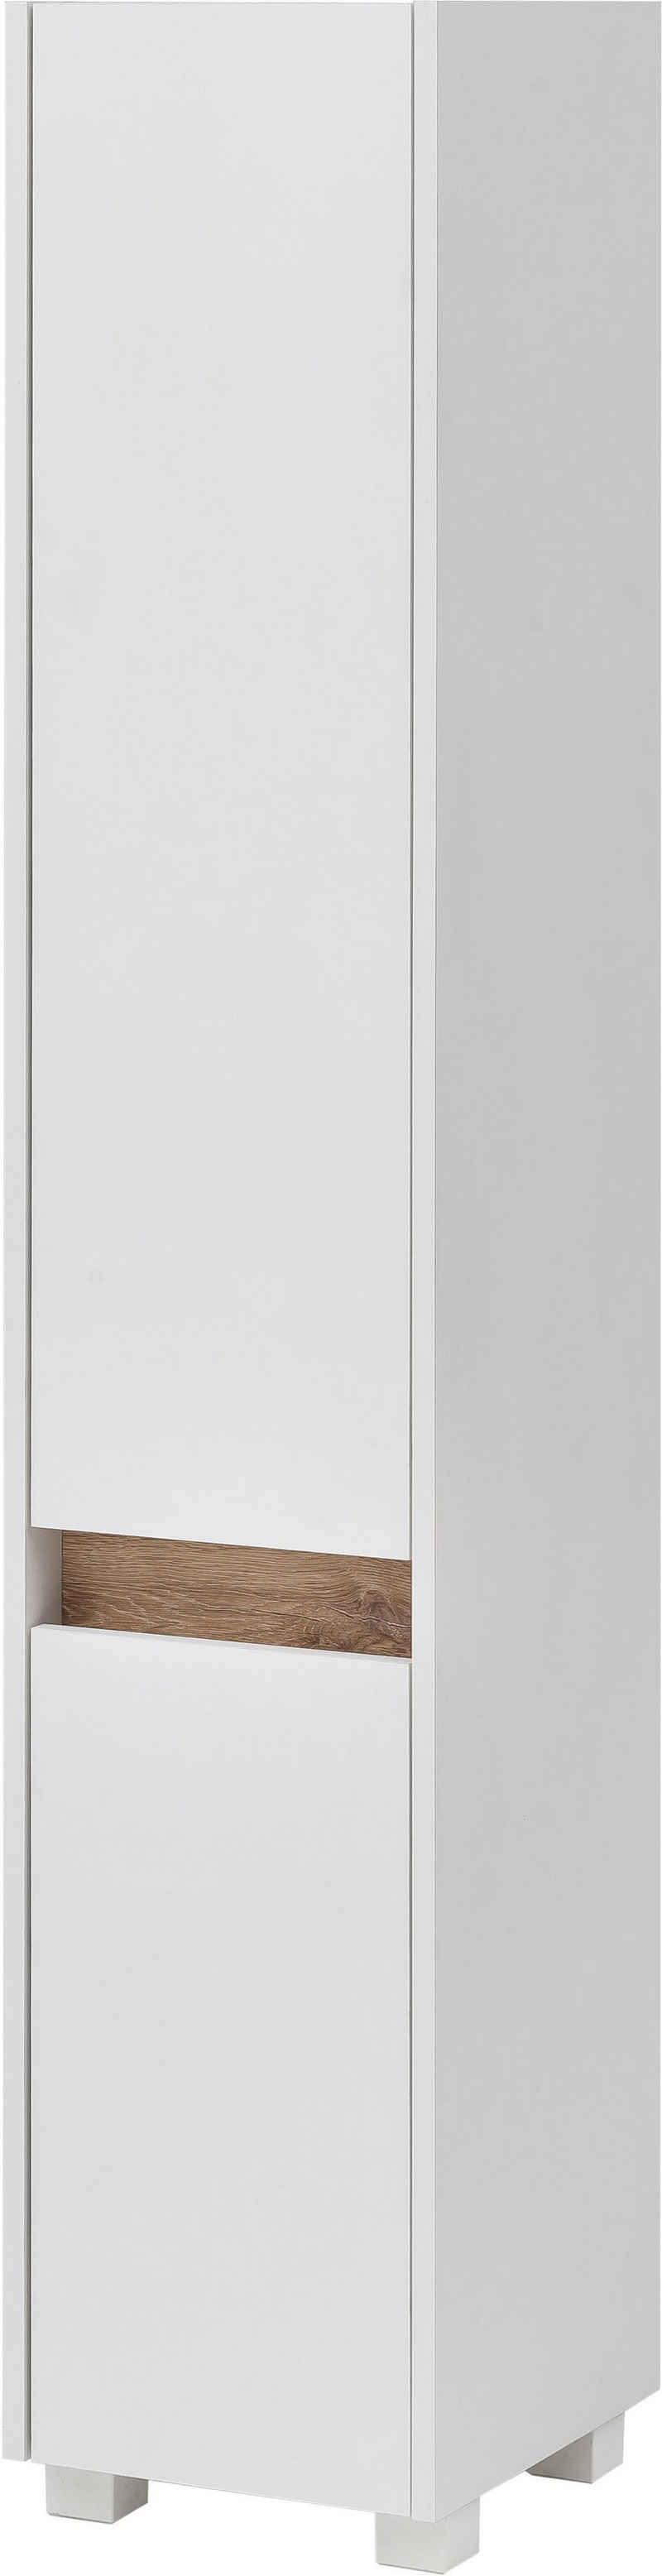 Schildmeyer Hochschrank »Cosmo« Höhe 164,5 cm, Badezimmerschrank, Blende im modernen Wildeiche-Look